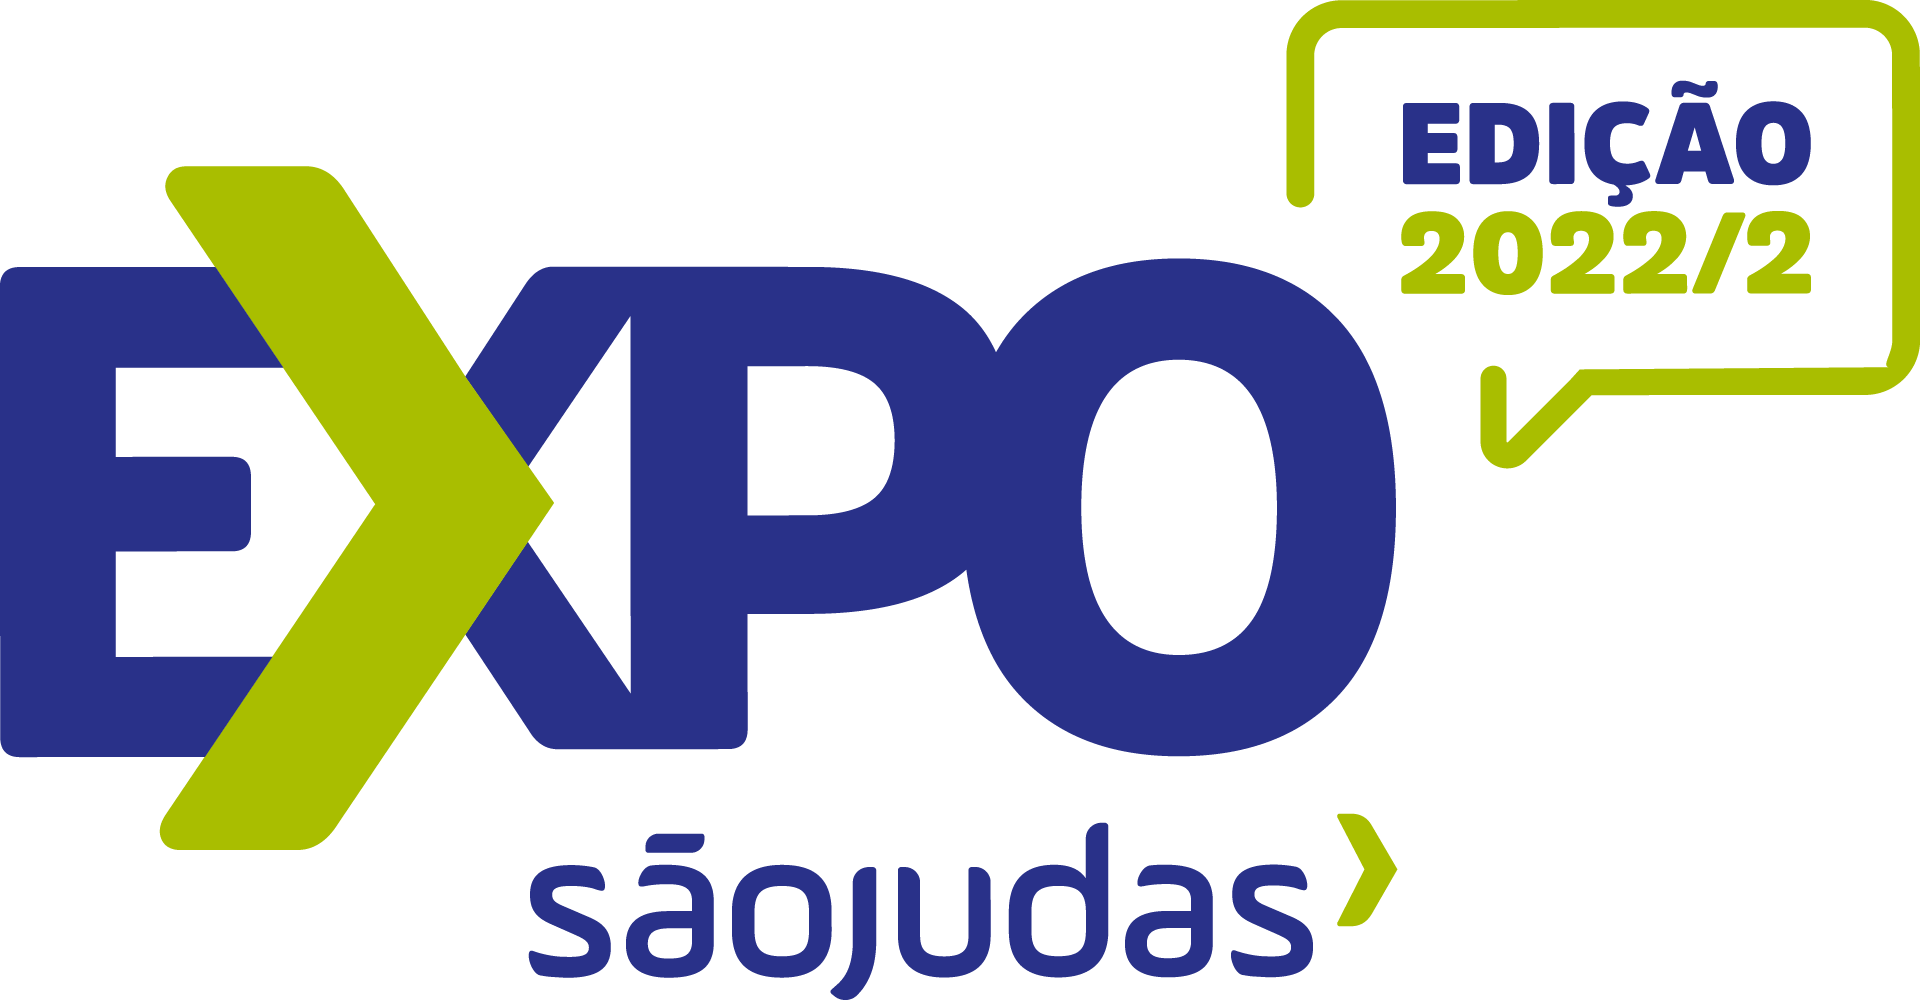 Expo São Judas